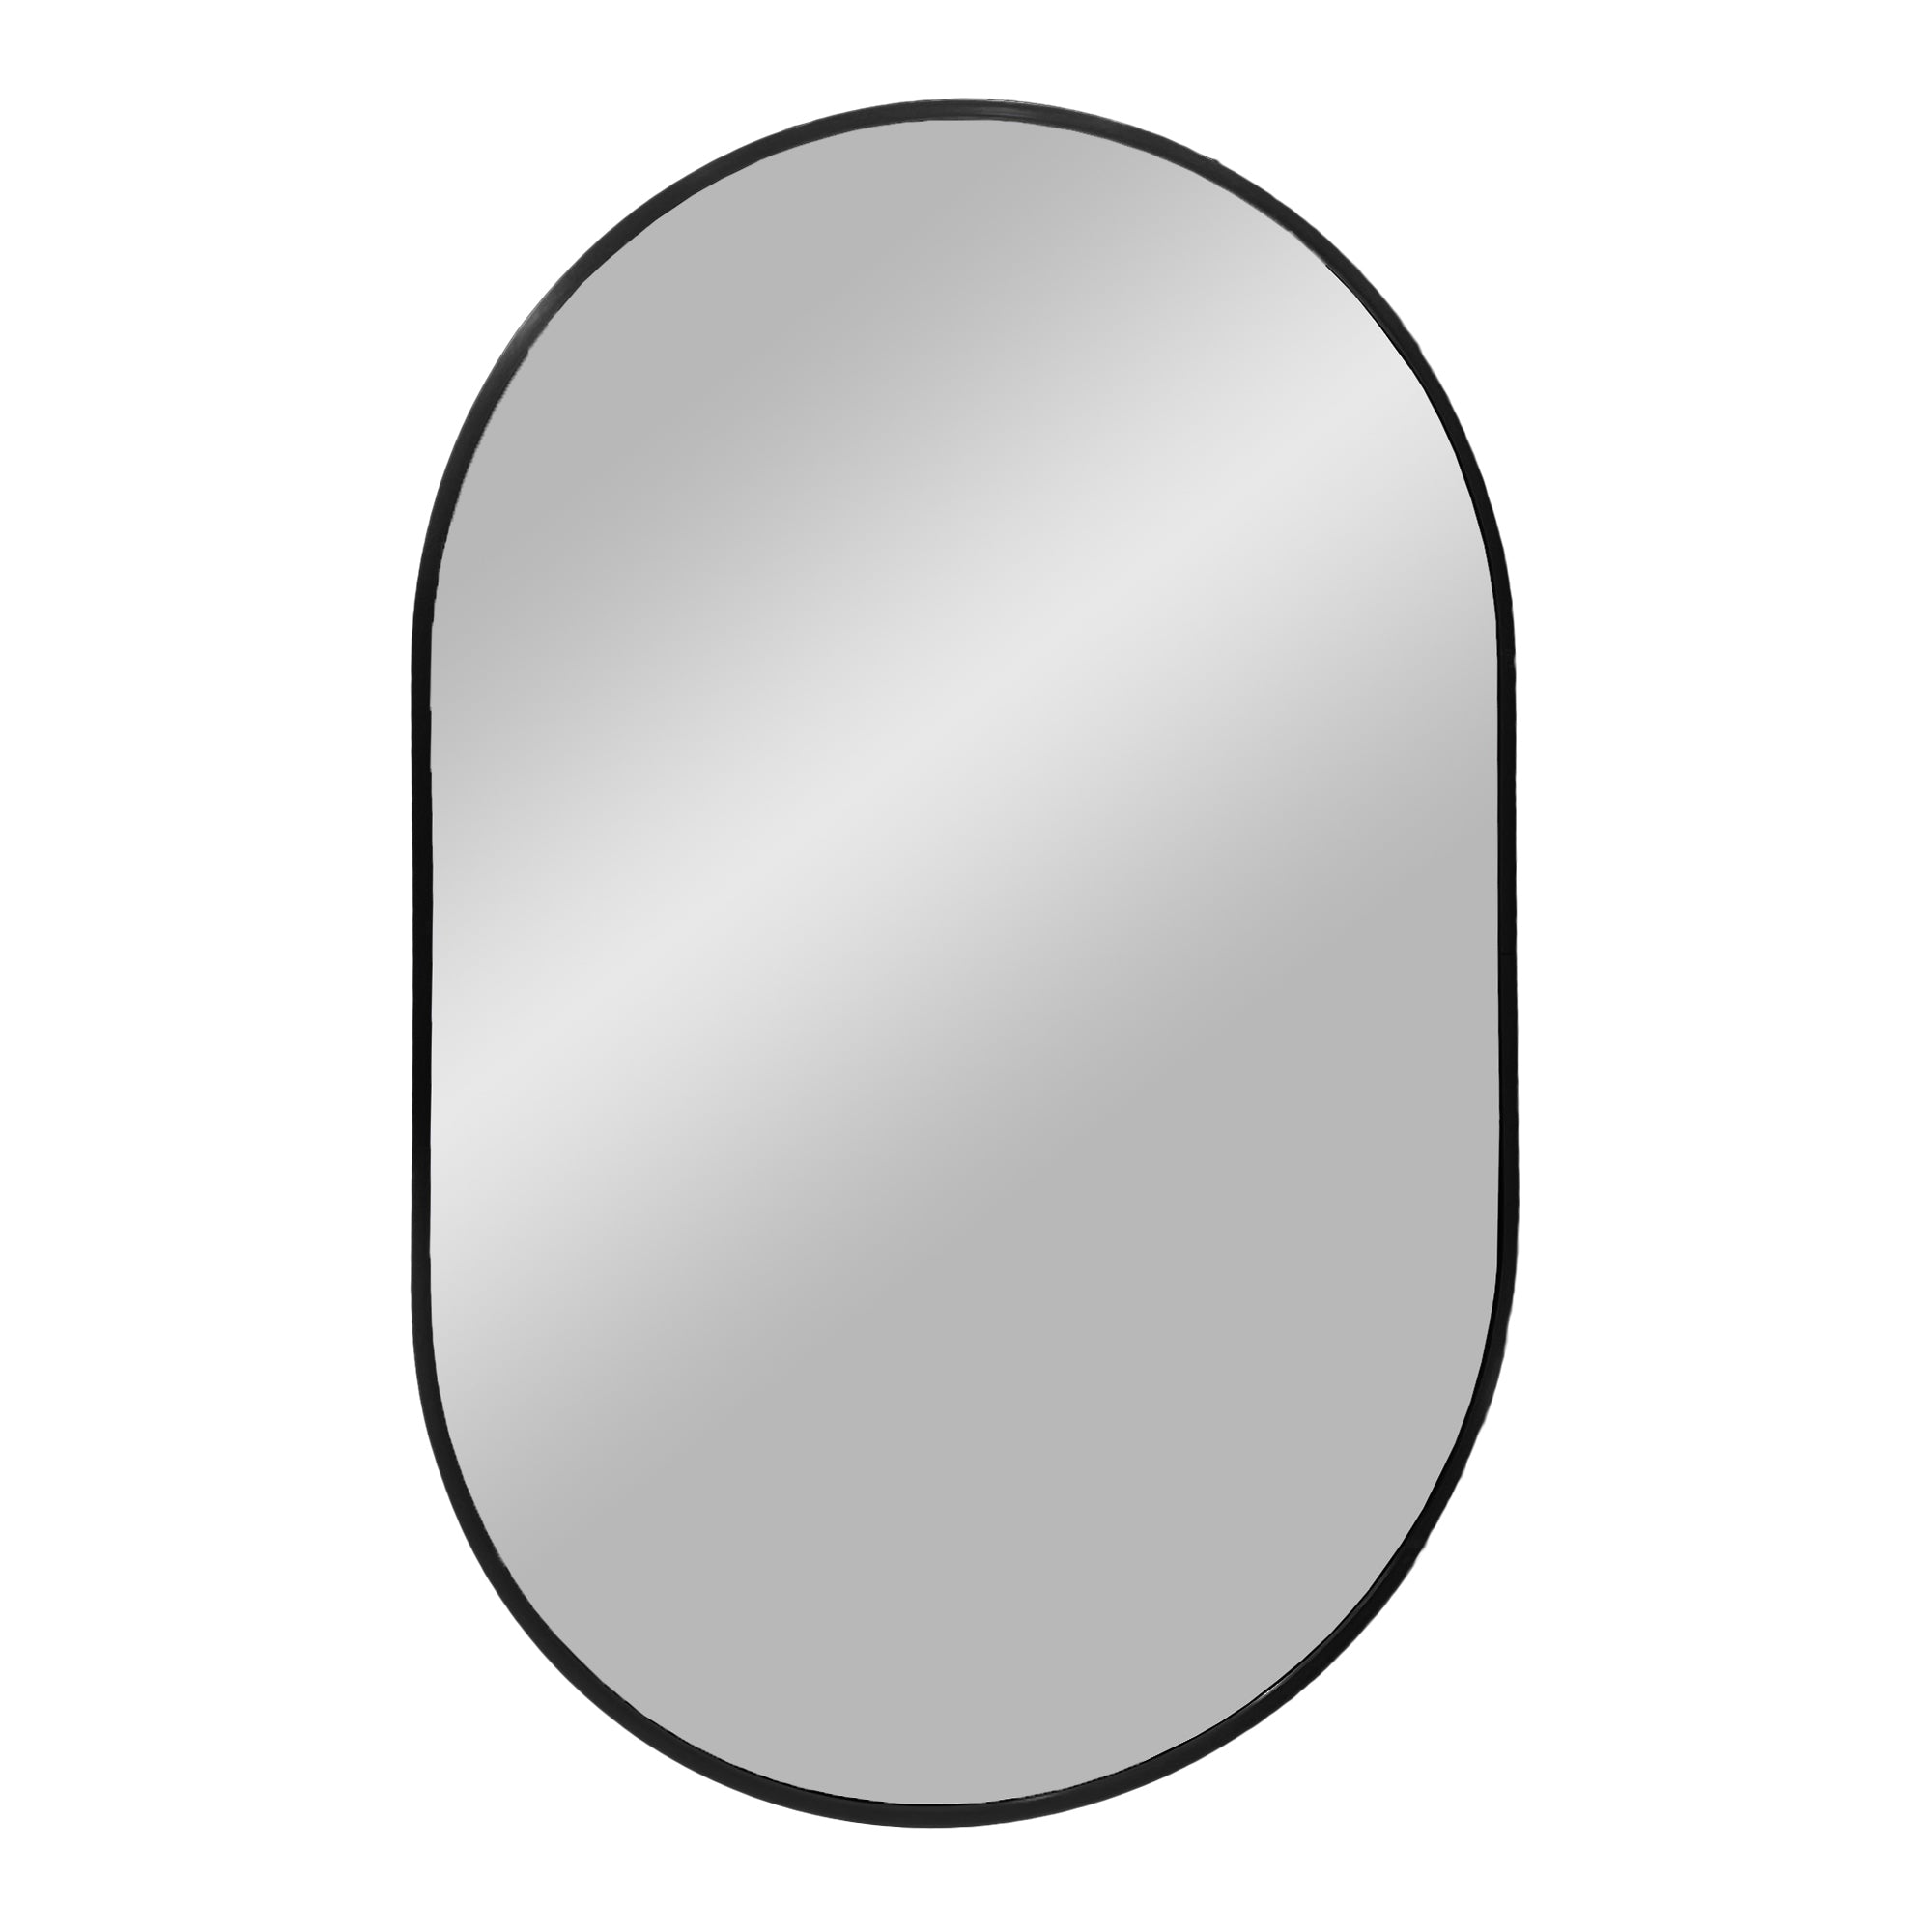 9: Madrid Spejl - Spejl i aluminium, sort, 50x80 cm